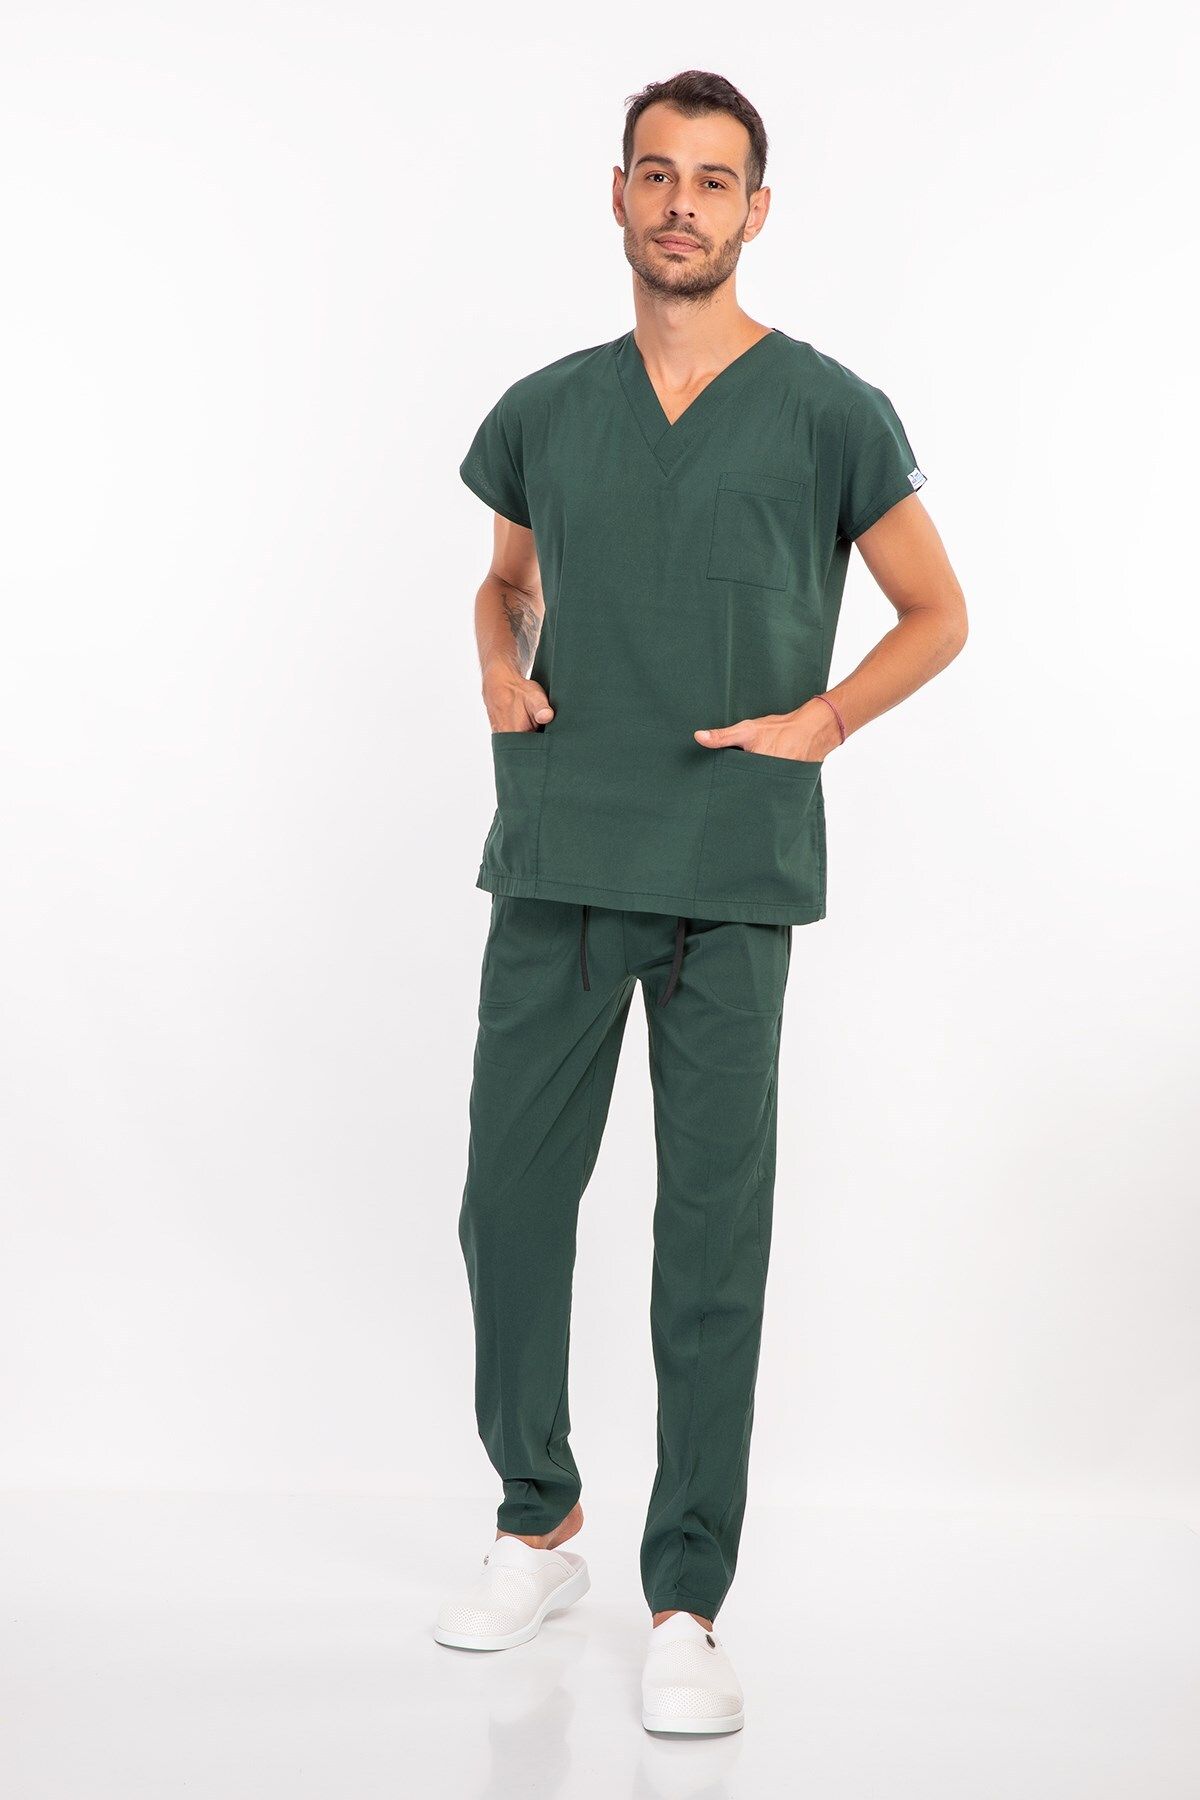 Nur Medikal Giyim Ördekbaşı Yeşili Pamuk Likralı Erkek Scrubs Cerrahi Üniforma Doktor Hemşire Takımı